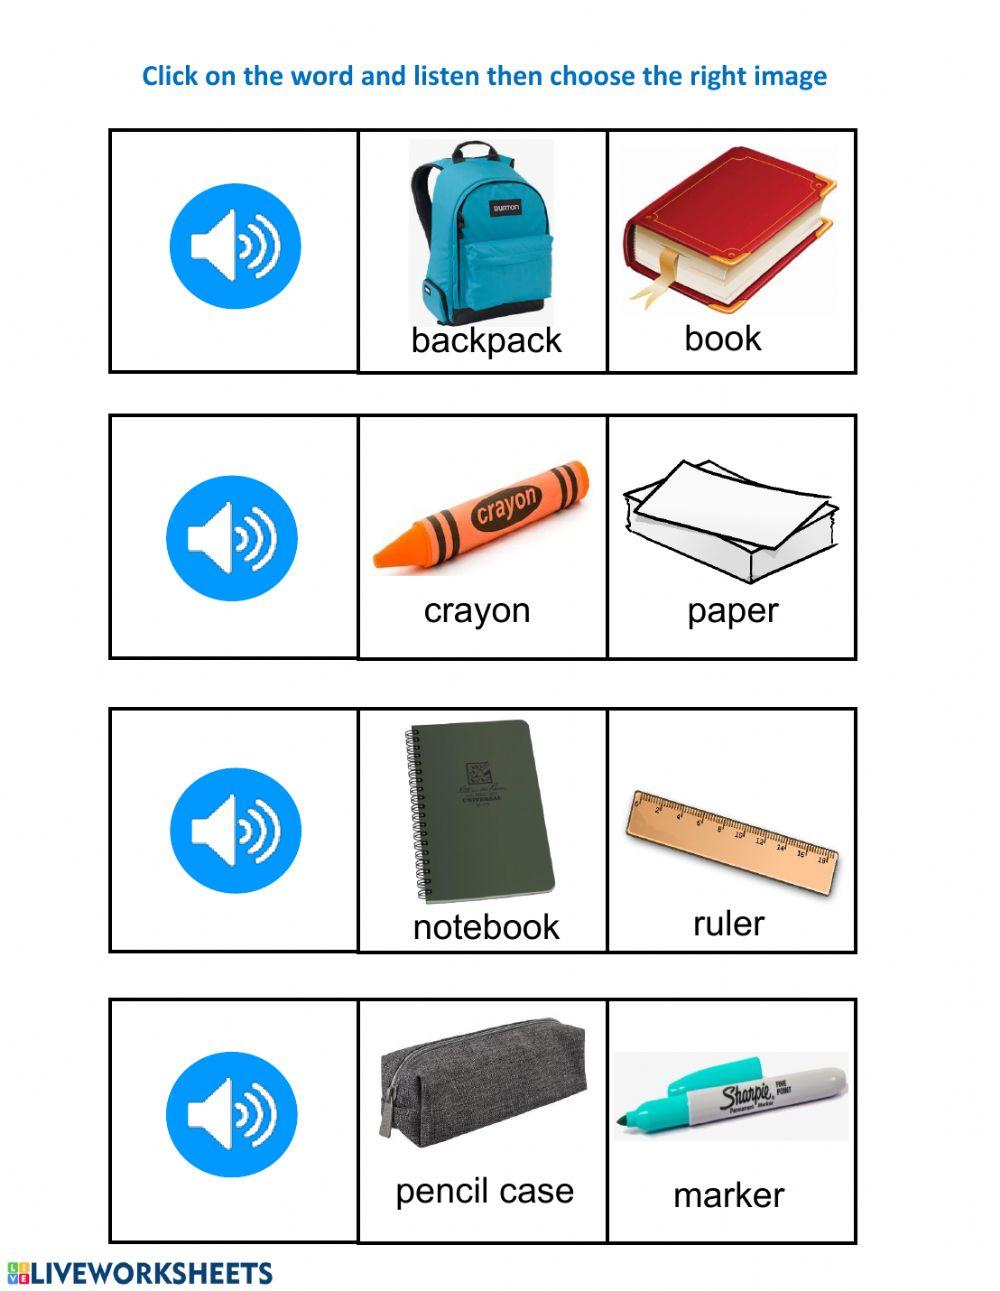 School supplies Pract 2